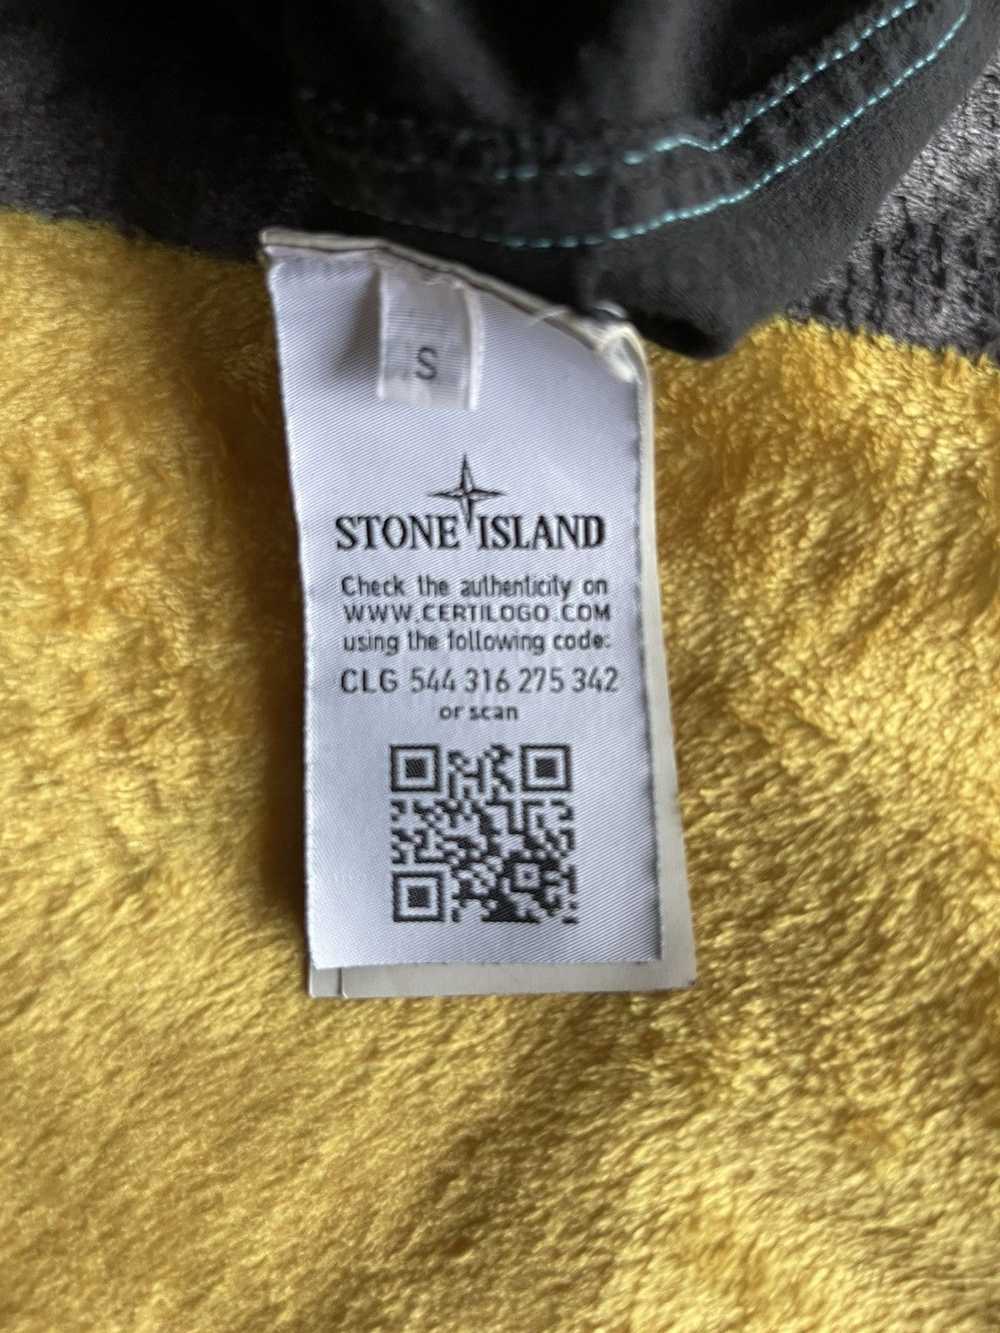 Stone Island Stone Island Long Sleeve - image 4